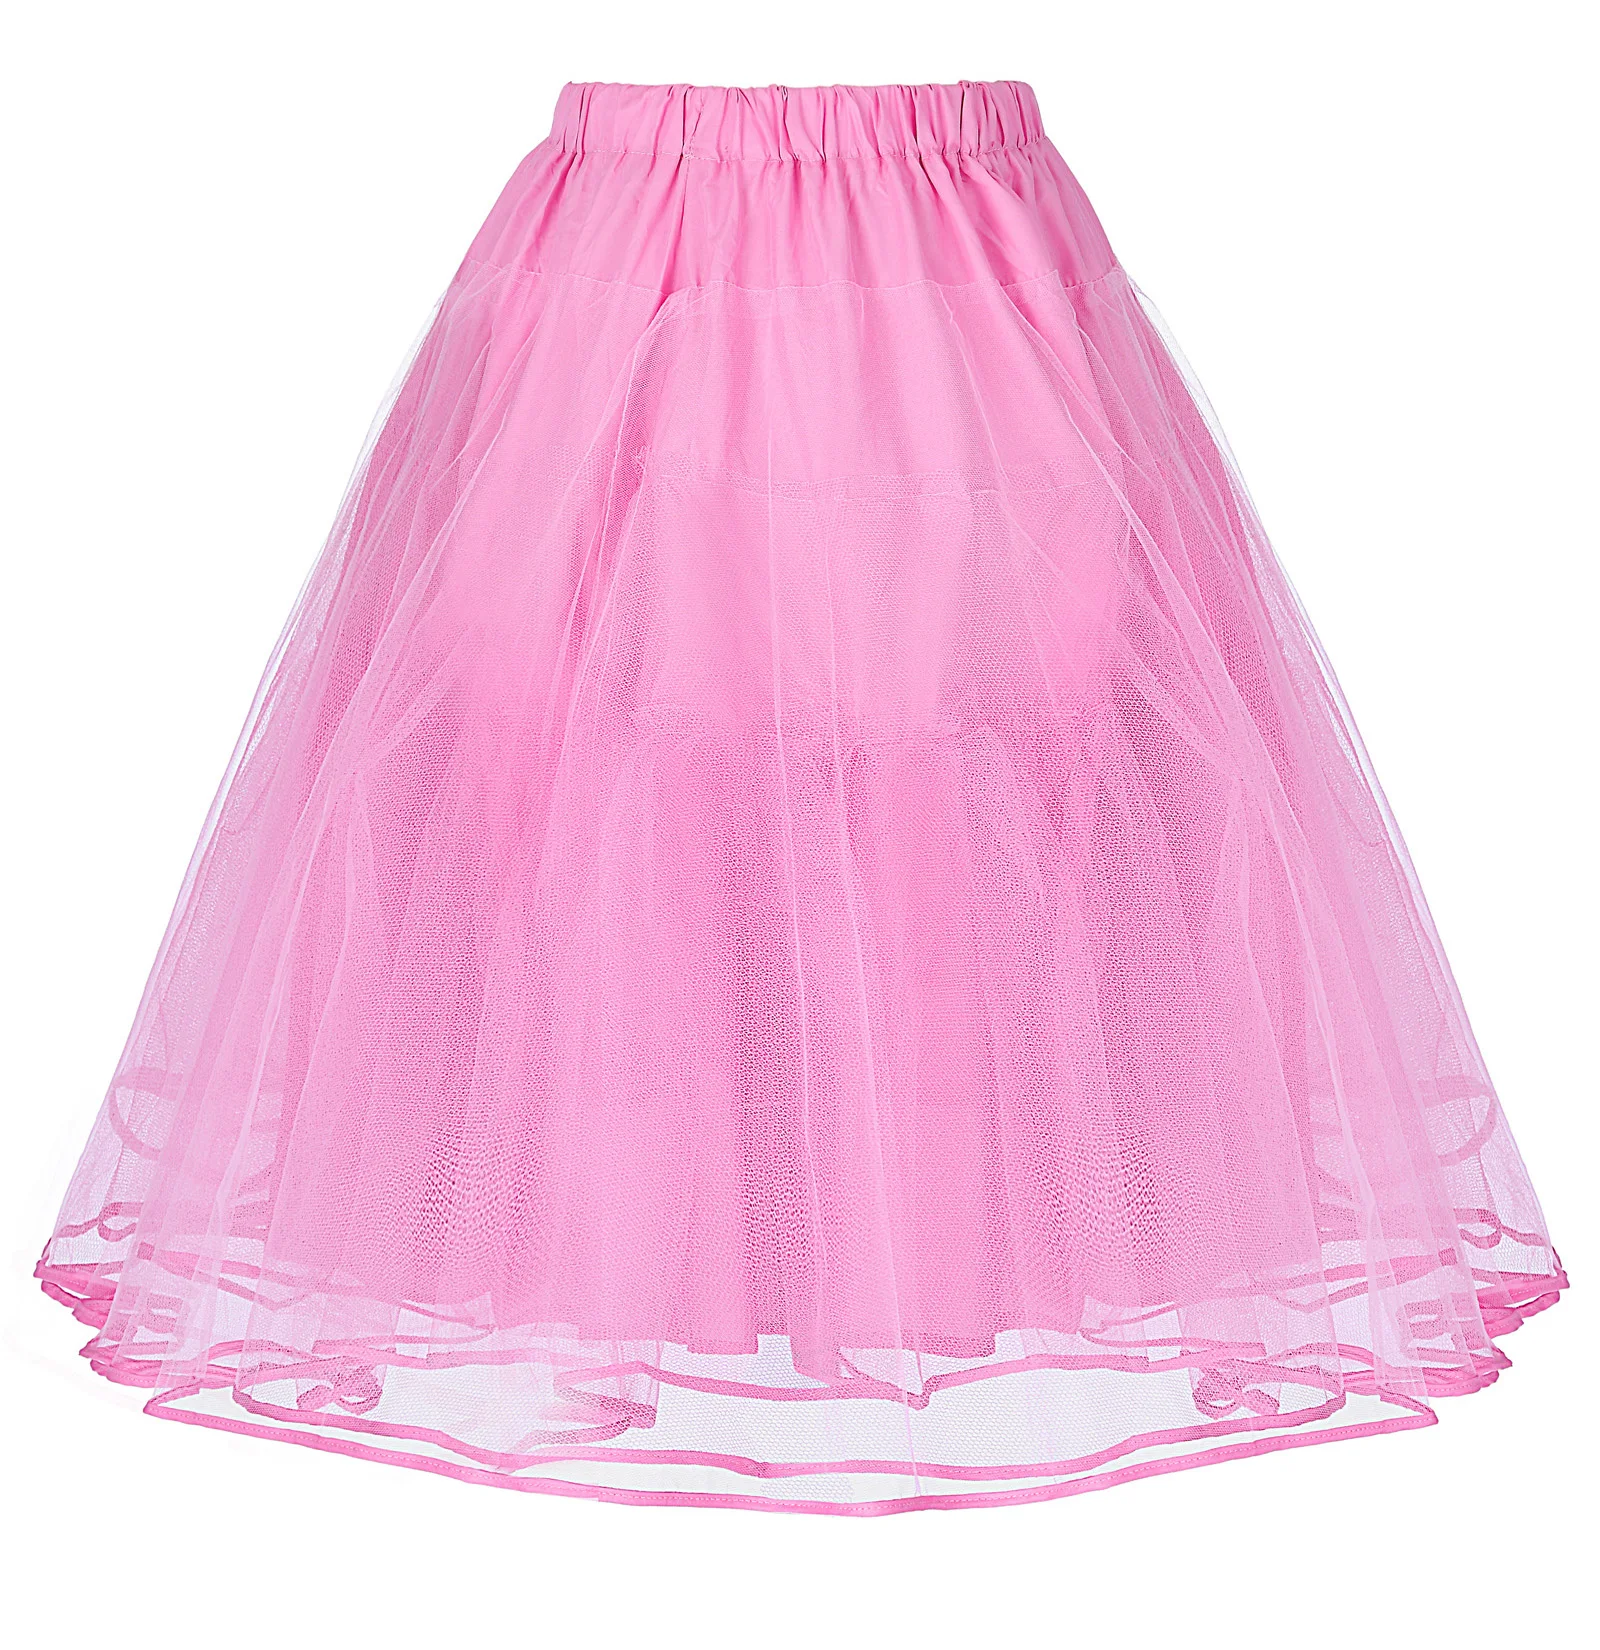 BP черная розовая Женская юбка Роскошная ретро юбка 90s корейский стиль harajuku Винтаж 90s 3 слоя тюль сетка нижняя юбка юбки - Цвет: Pink